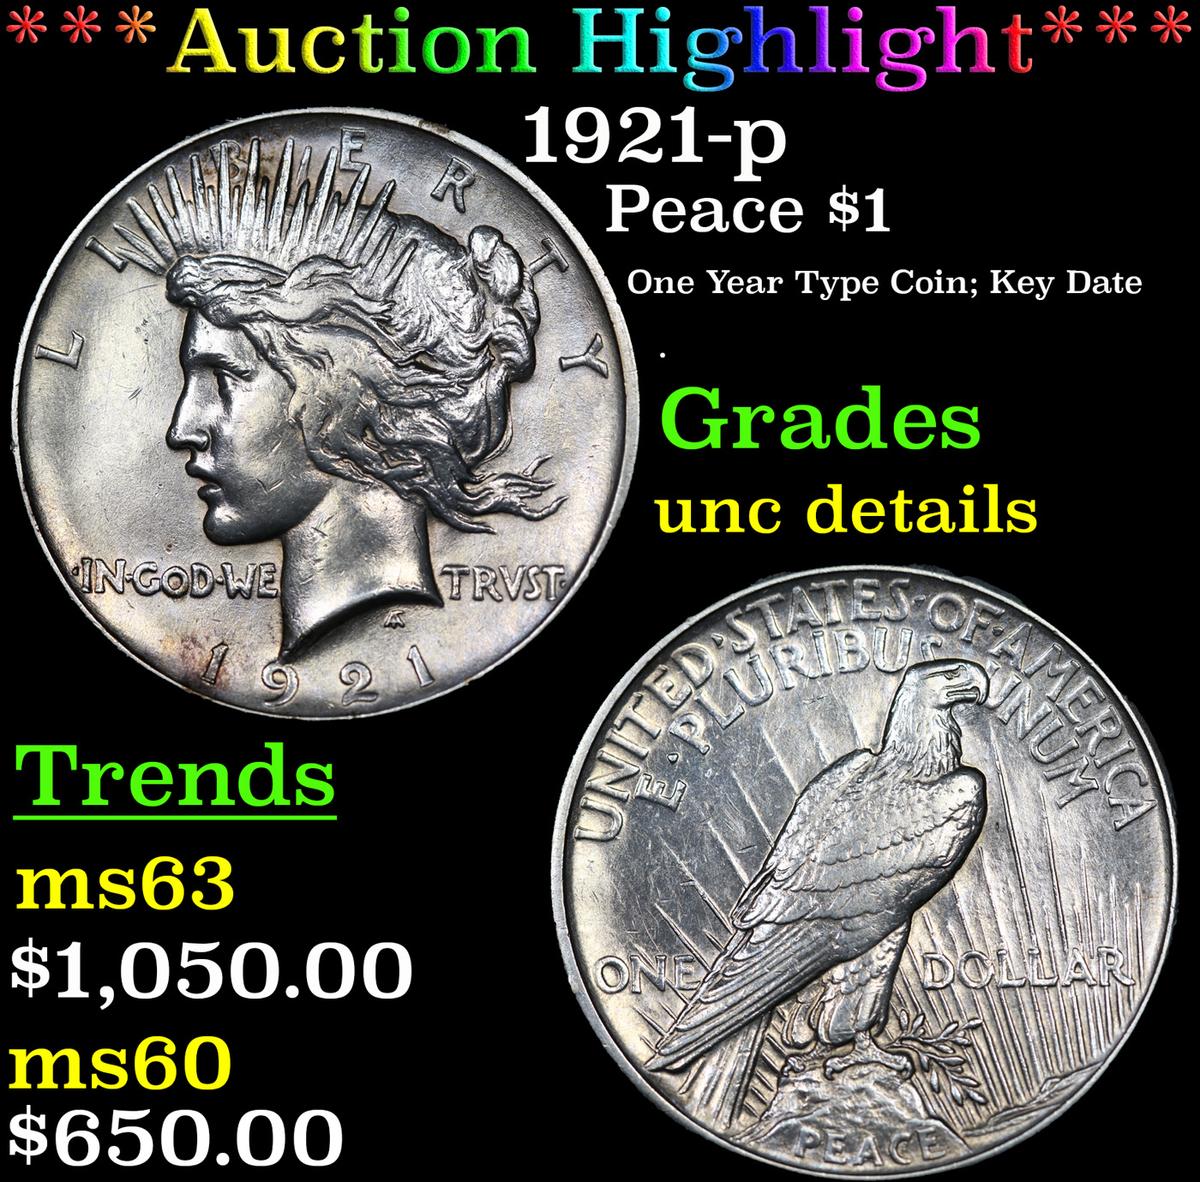 ***Auction Highlight*** 1921-p Peace Dollar $1 Grades Unc Details (fc)